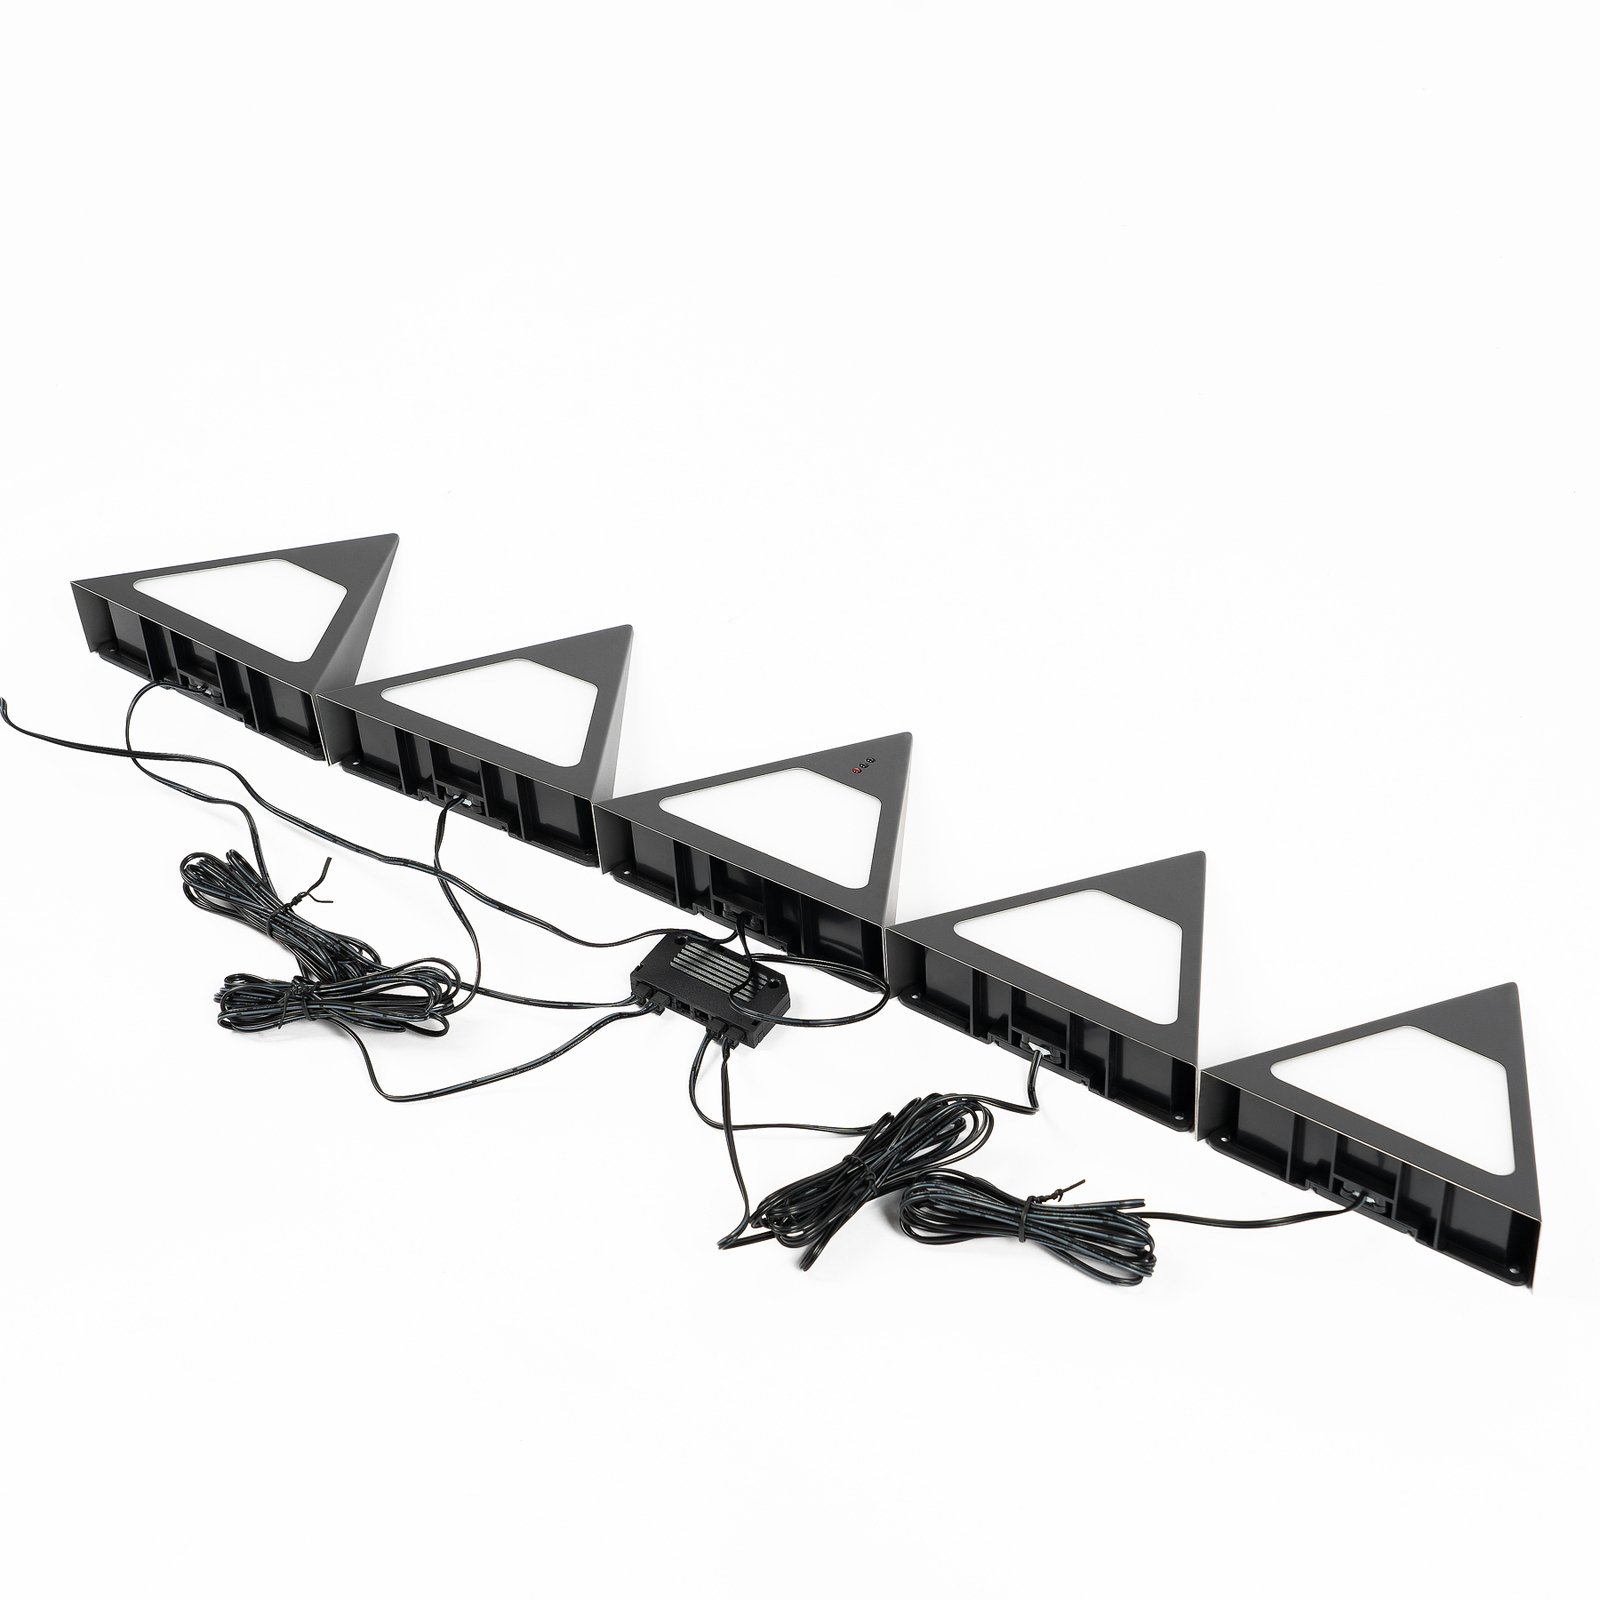 Prios Odia LED-lampa för underskåp, svart, set om 5